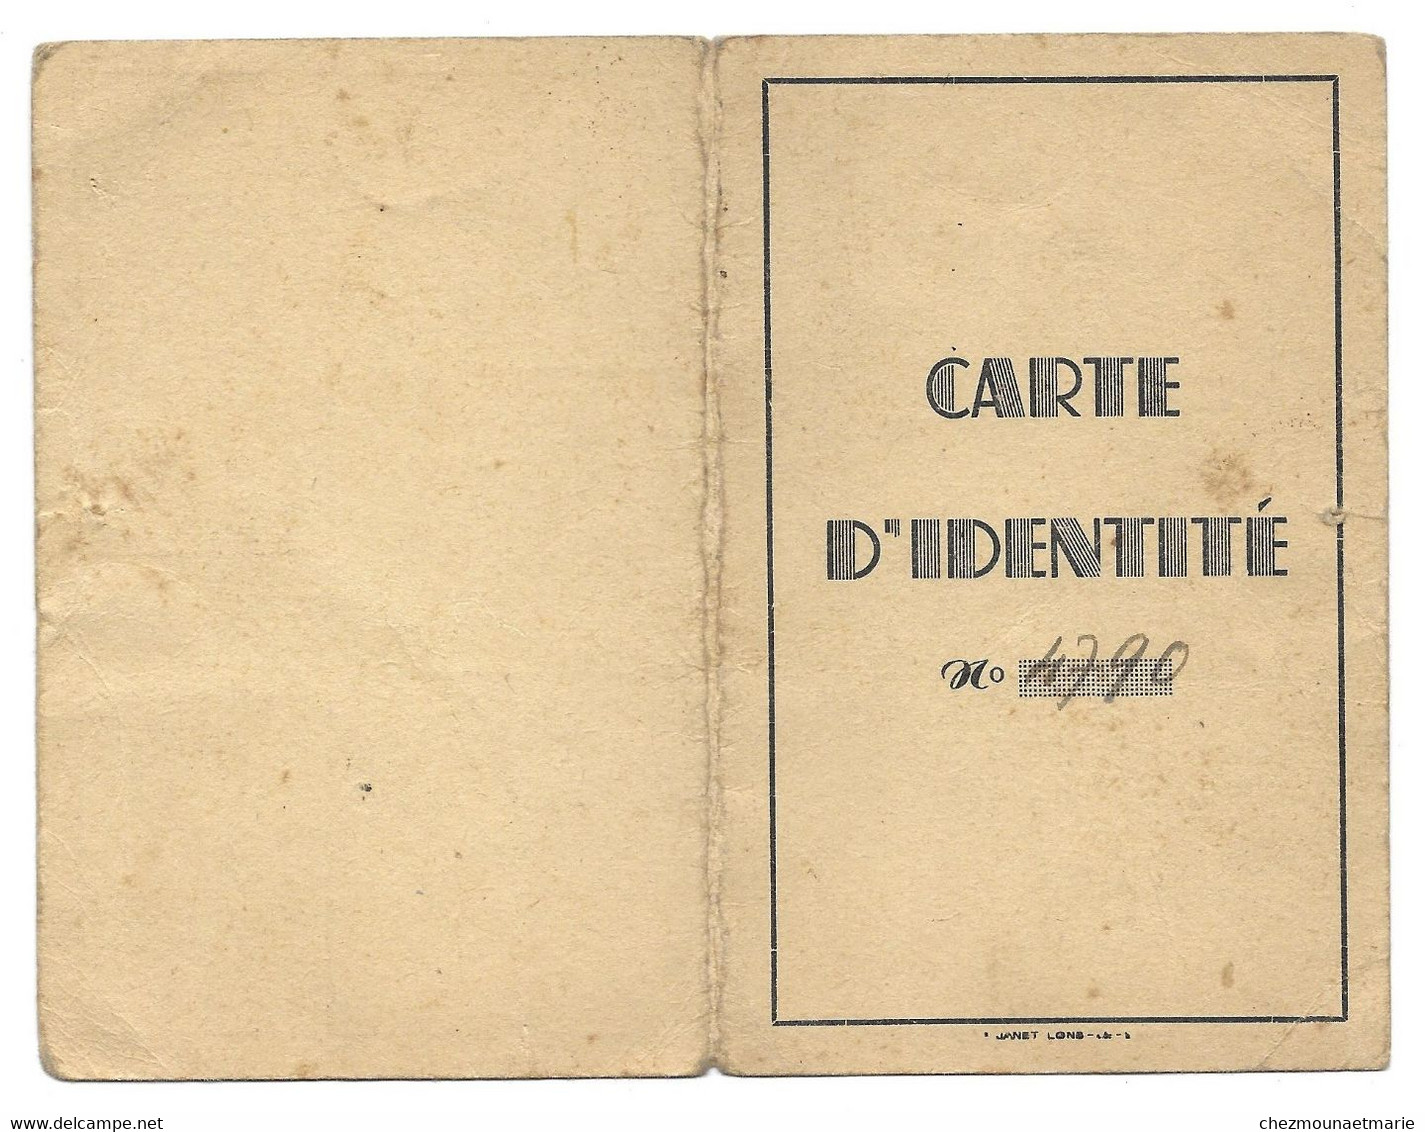 1943 LONS LE SAUNIER LUGAND CLAIRE EP FAIVRE NE A LONS EN 1897 BOUCHERE - CARTE IDENTITE - Historische Dokumente